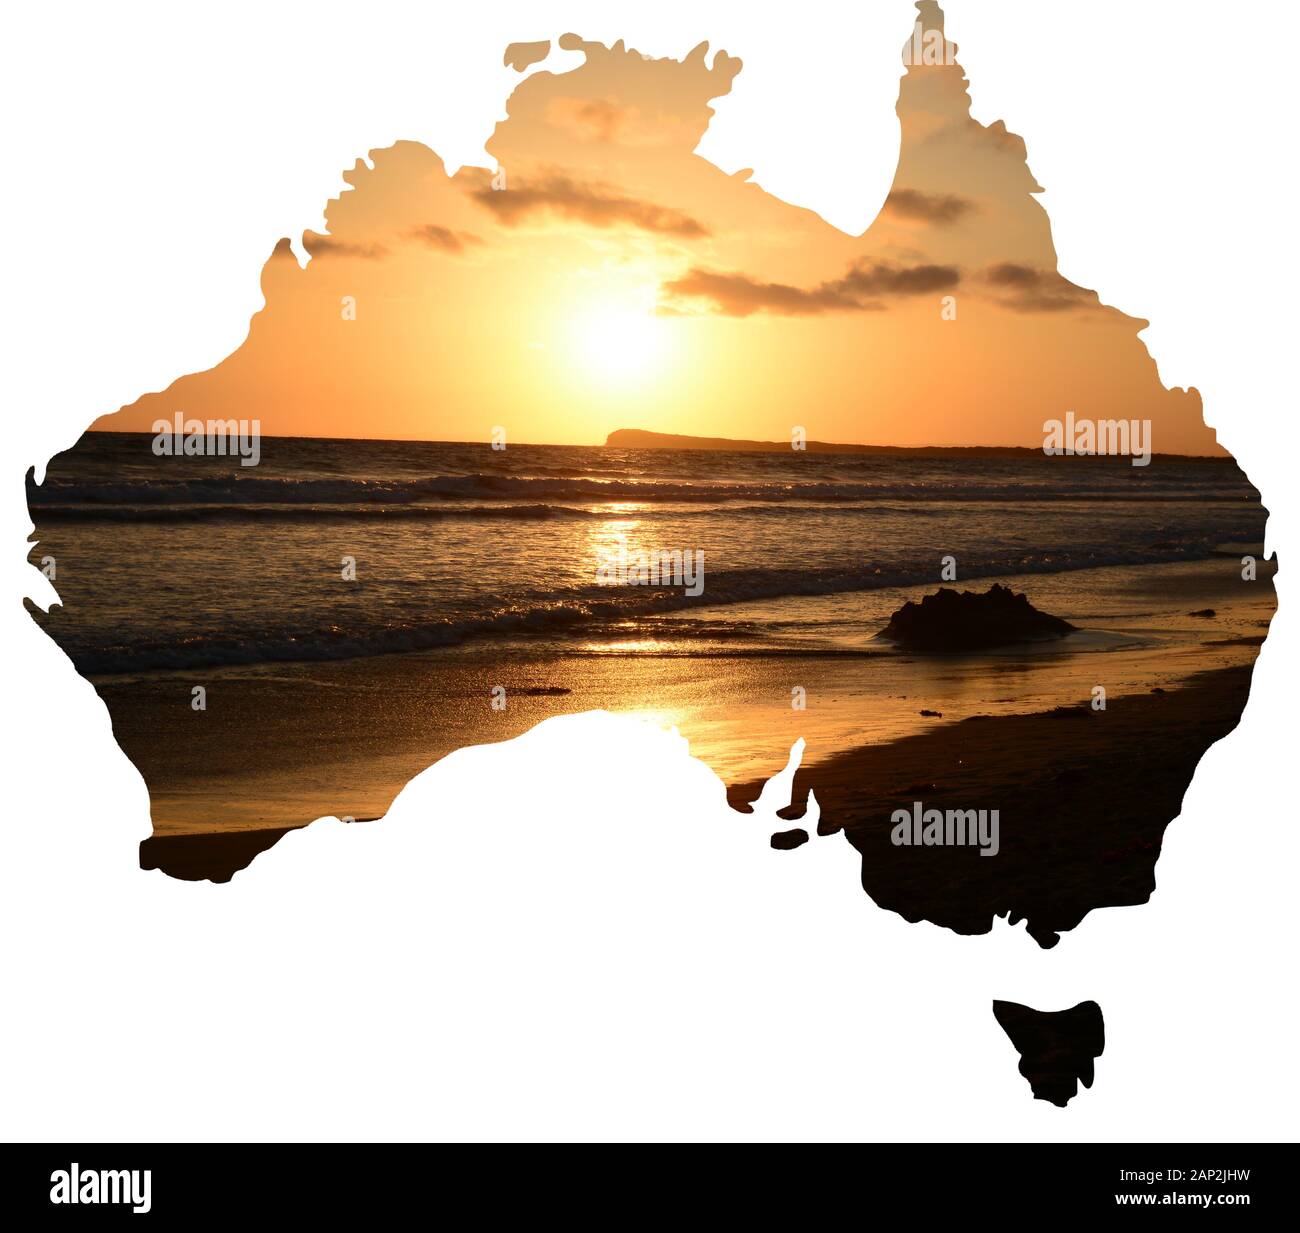 Der Blick auf die Natur und Landschaft von Australien in eine Karte des Landes Stockfoto